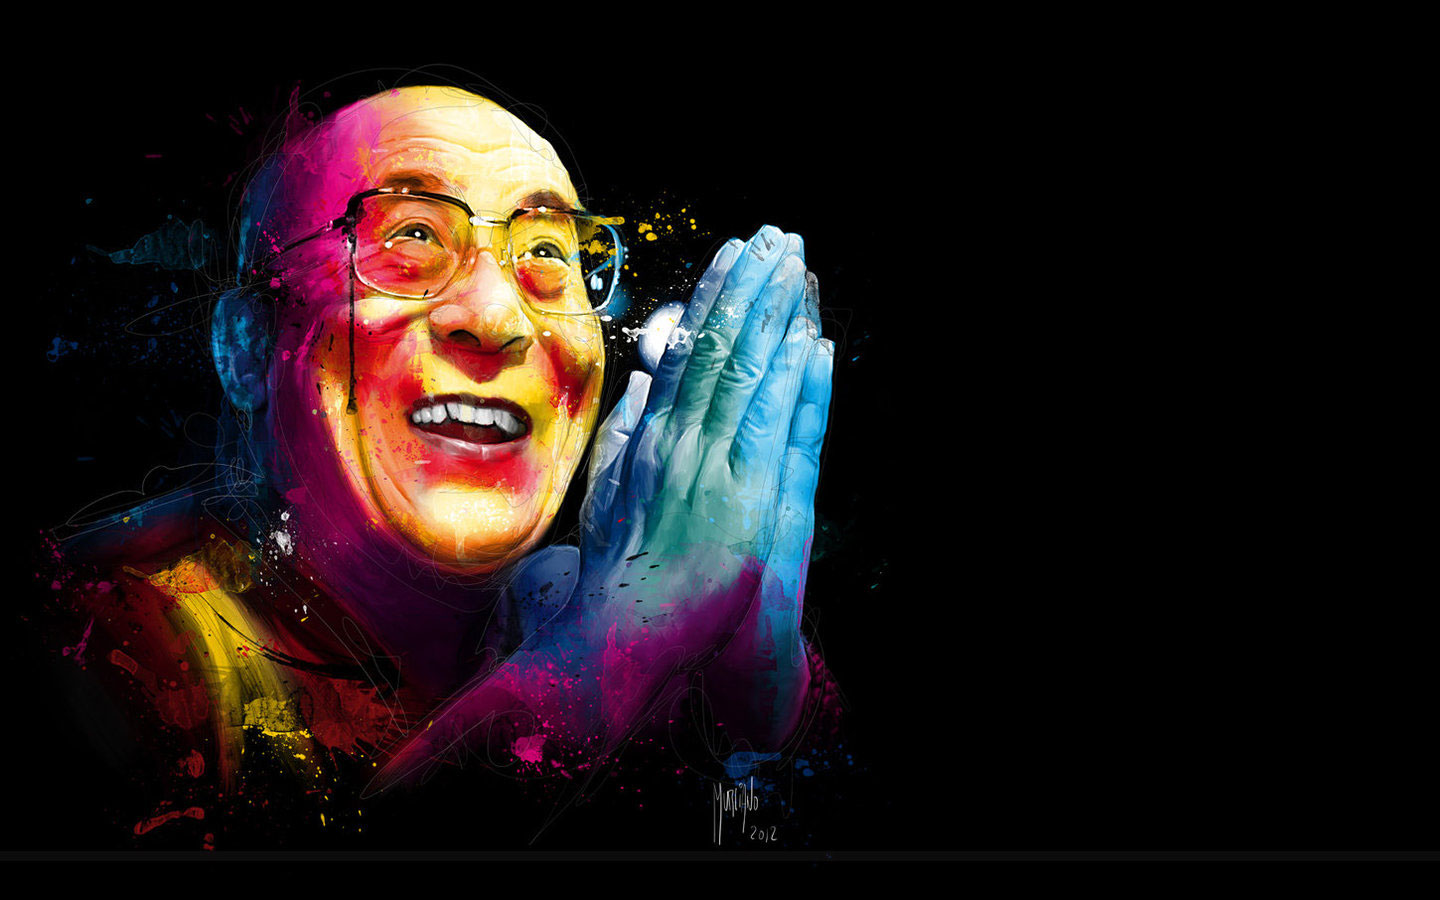 Dalai Lama Wallpaper Amp Image